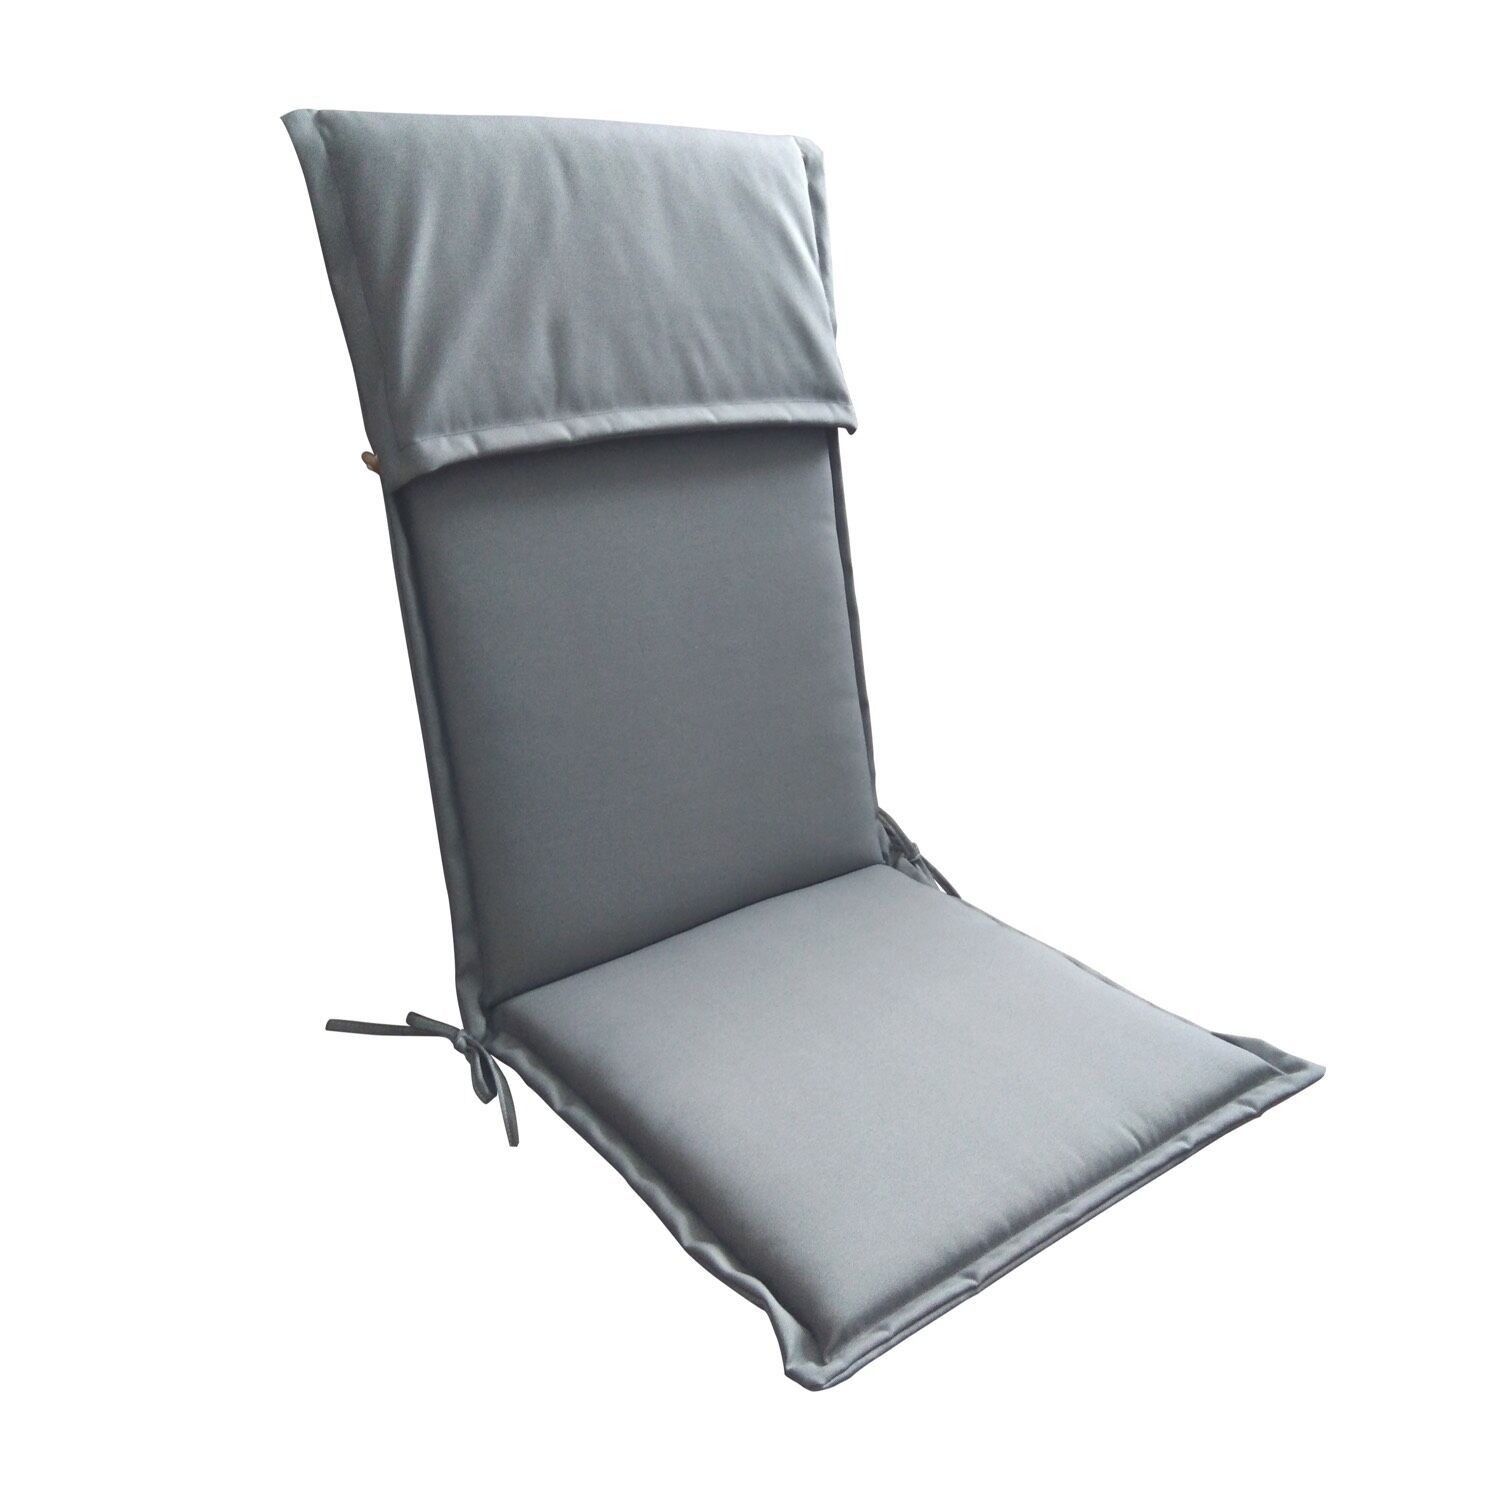 High Back Chair Cushion - Homeworks